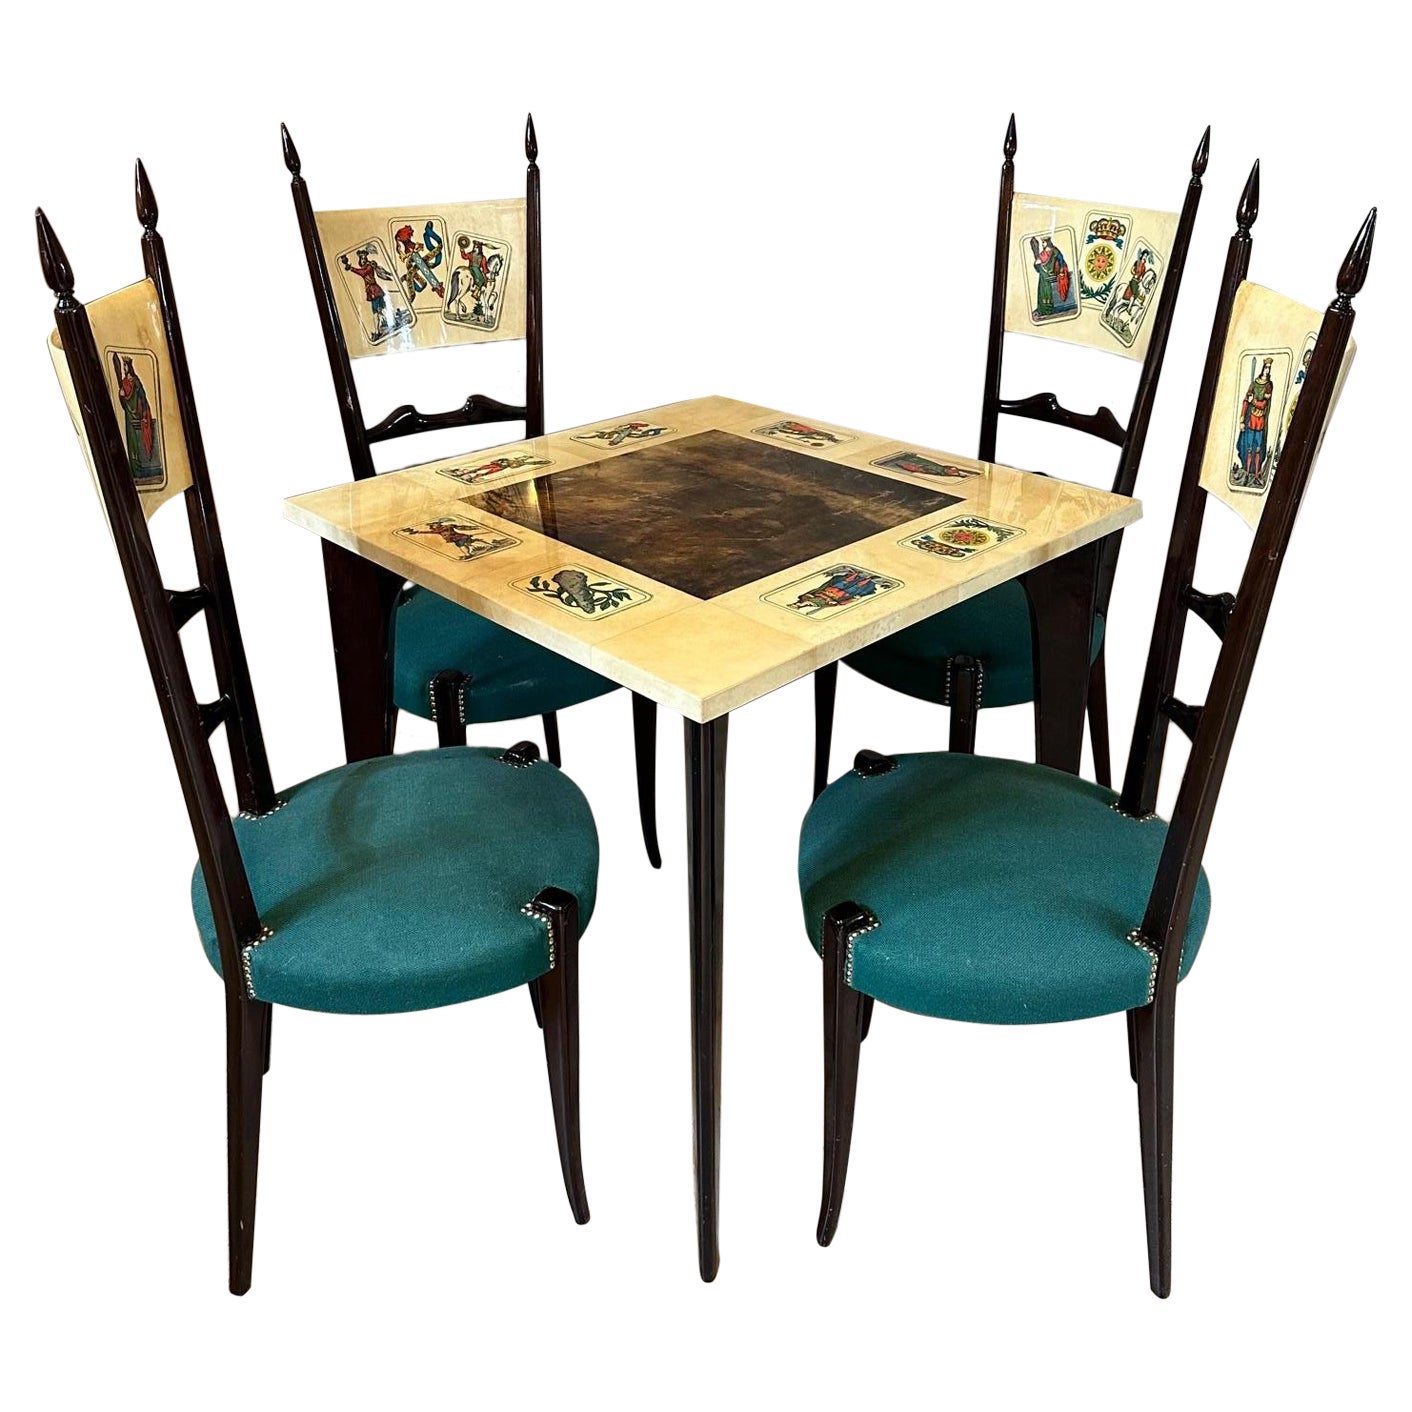 Lackierter Tisch aus Ziegenleder und Nussbaumholz von Aldo Tura aus dem 20. Jahrhundert mit Stühlen, 1960er Jahre